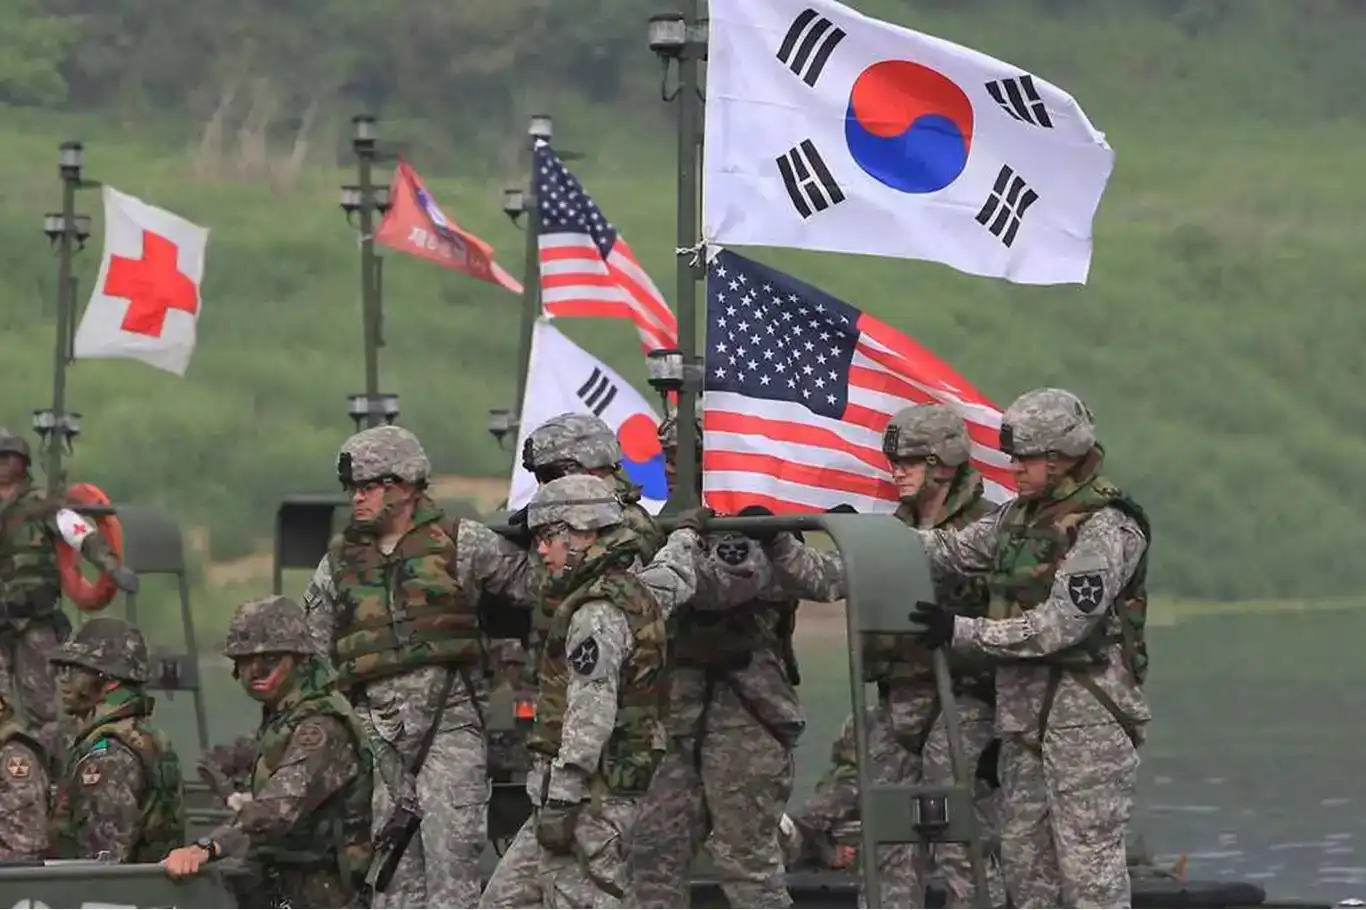 كوريا الجنوبية تشارك في المناورات السيبرانية الأمريكية